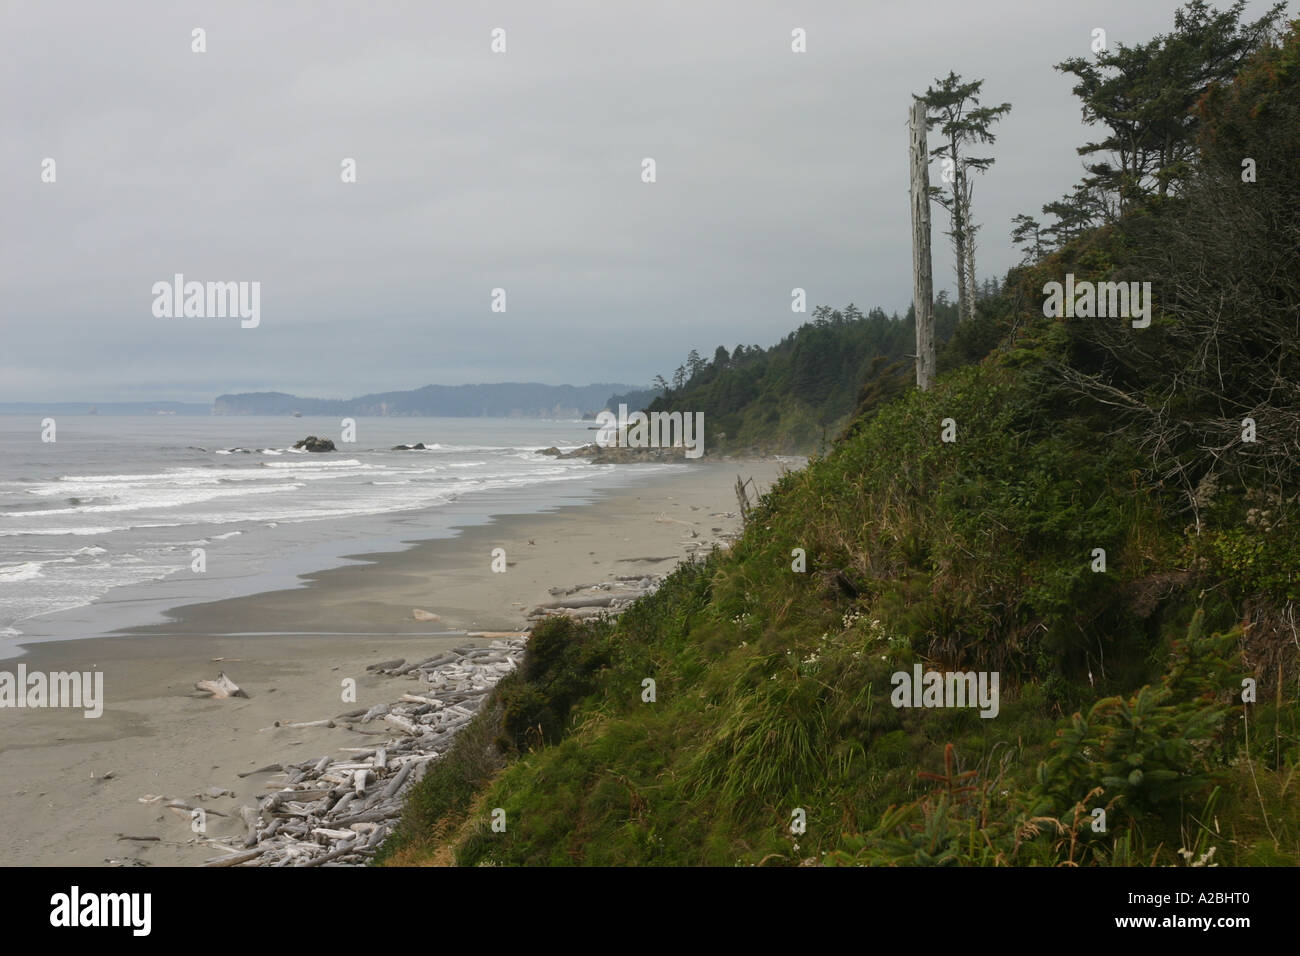 Die windgepeitschten Bäume und Sträucher des zweiten Strand Landzungen kontrastieren mit dem entfernterer Wellen, Treibholz, Strand und "Heuhaufen". Stockfoto